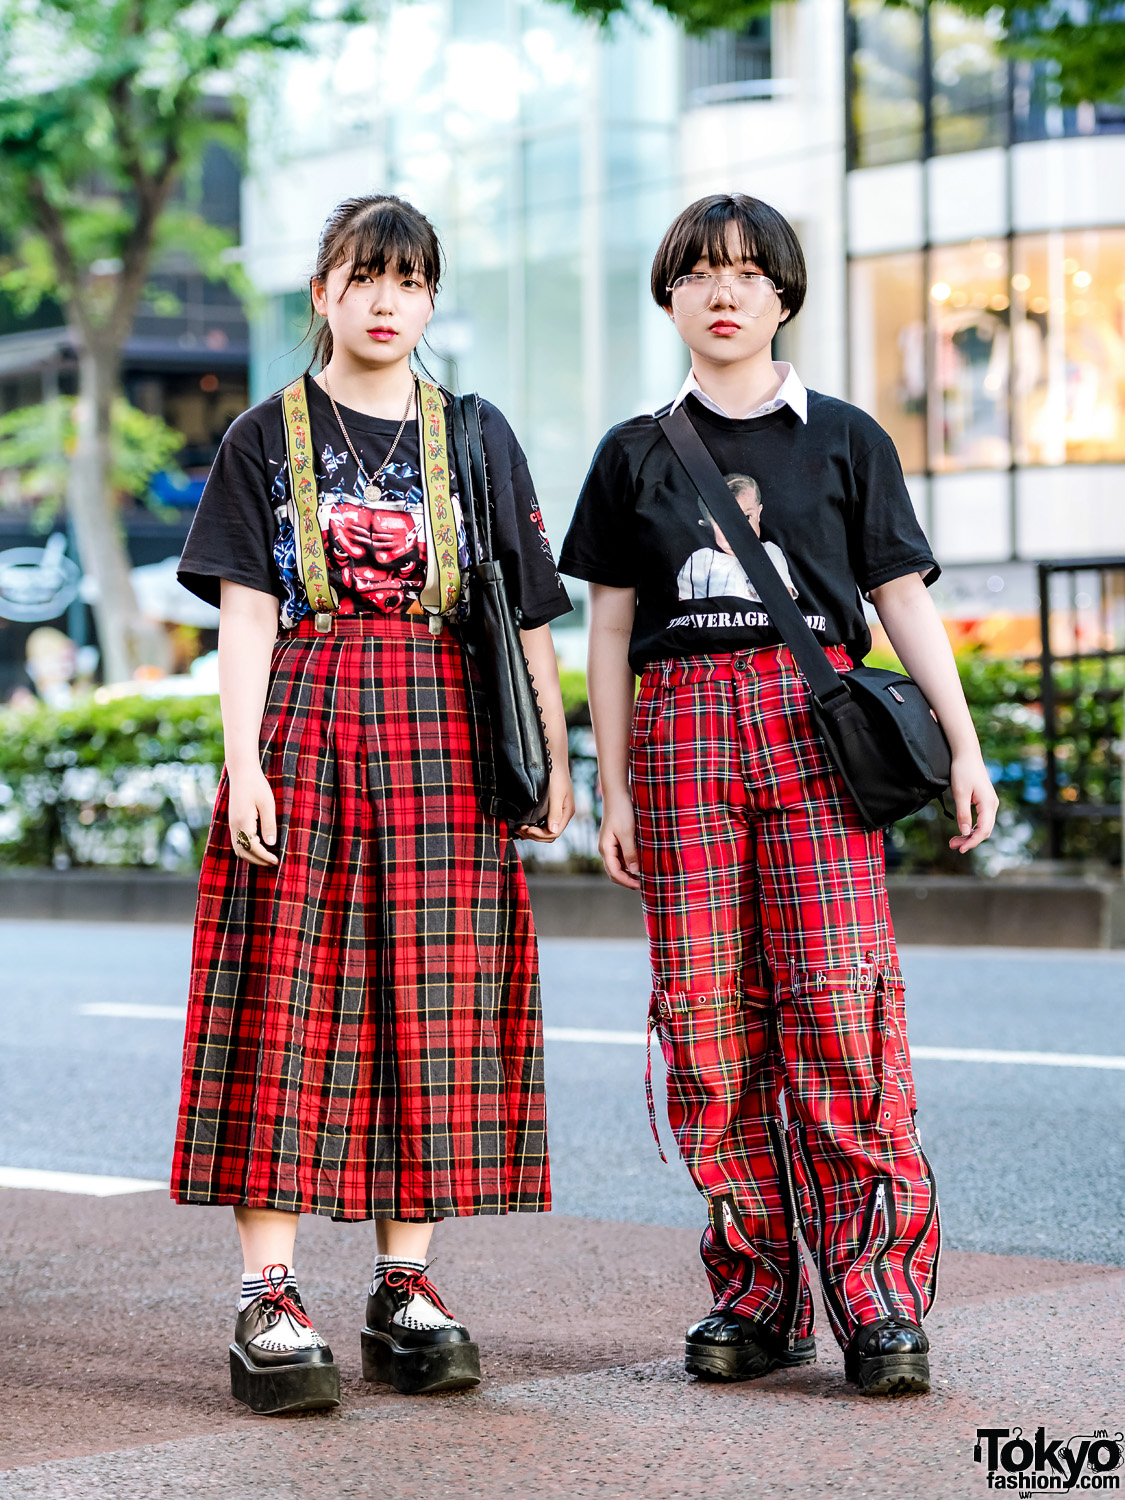 Современности японии. Хараджуку Токио стиль одежды. Токио стиль Харадзюку. Харадзюку Токио одежда. Уличная мода Азия Харадзюку.